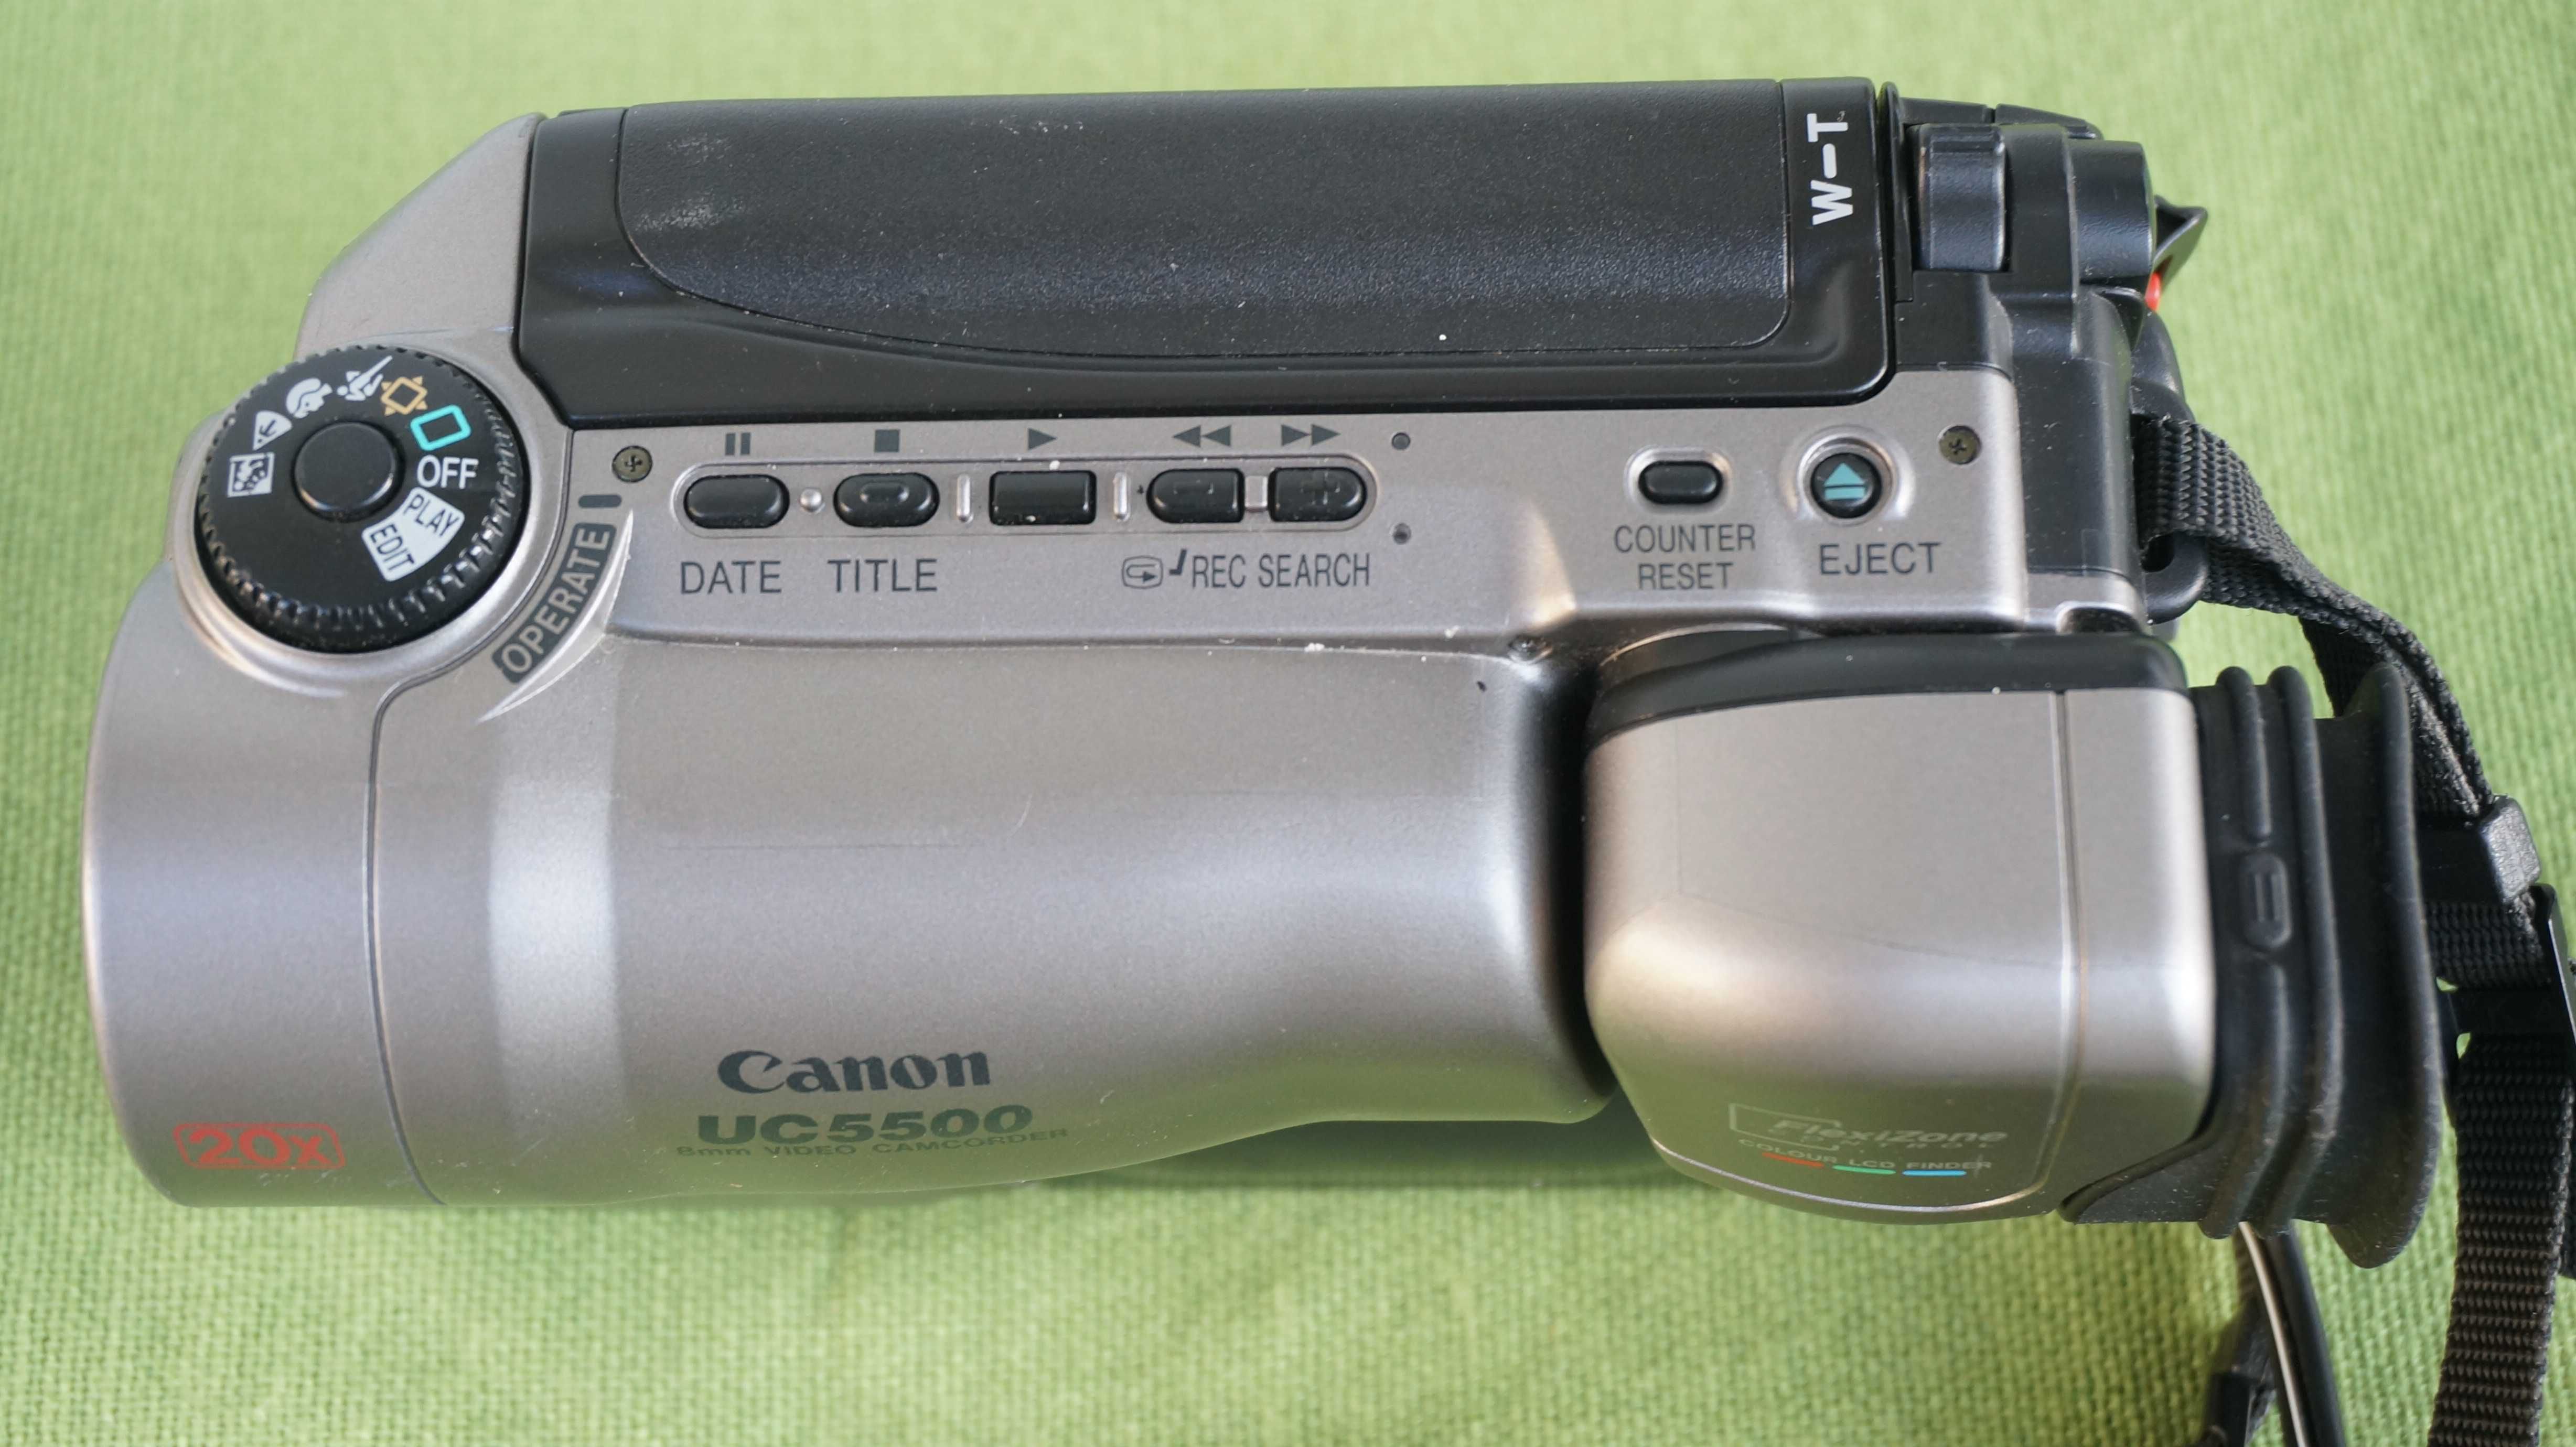 Camera video8 Canon UC55000